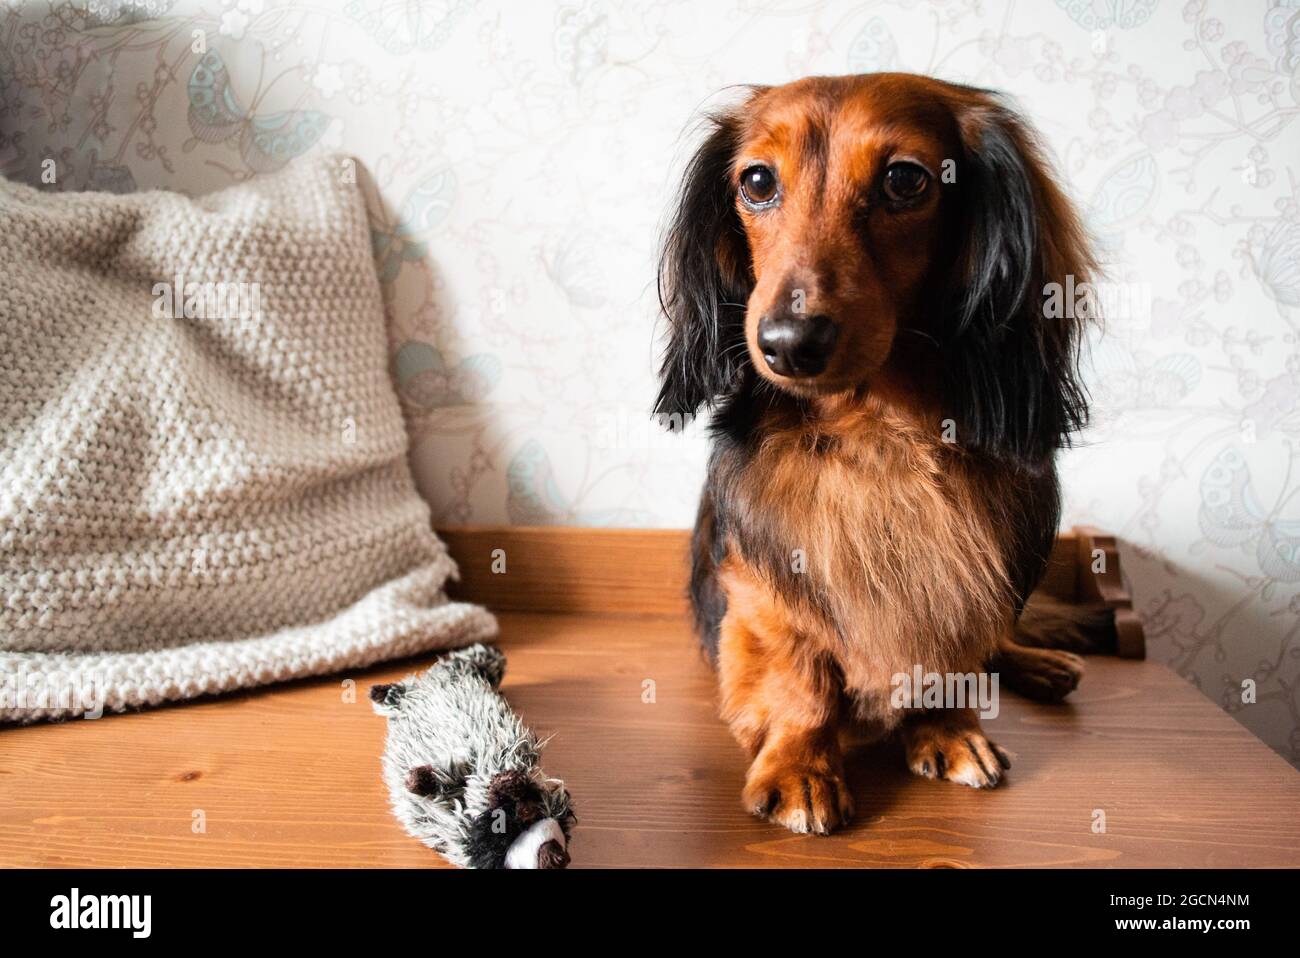 Portrait en longueur de dachshund à cheveux longs bien soignés de couleur rouge et noire, avec son jouet de chiens. Banque D'Images